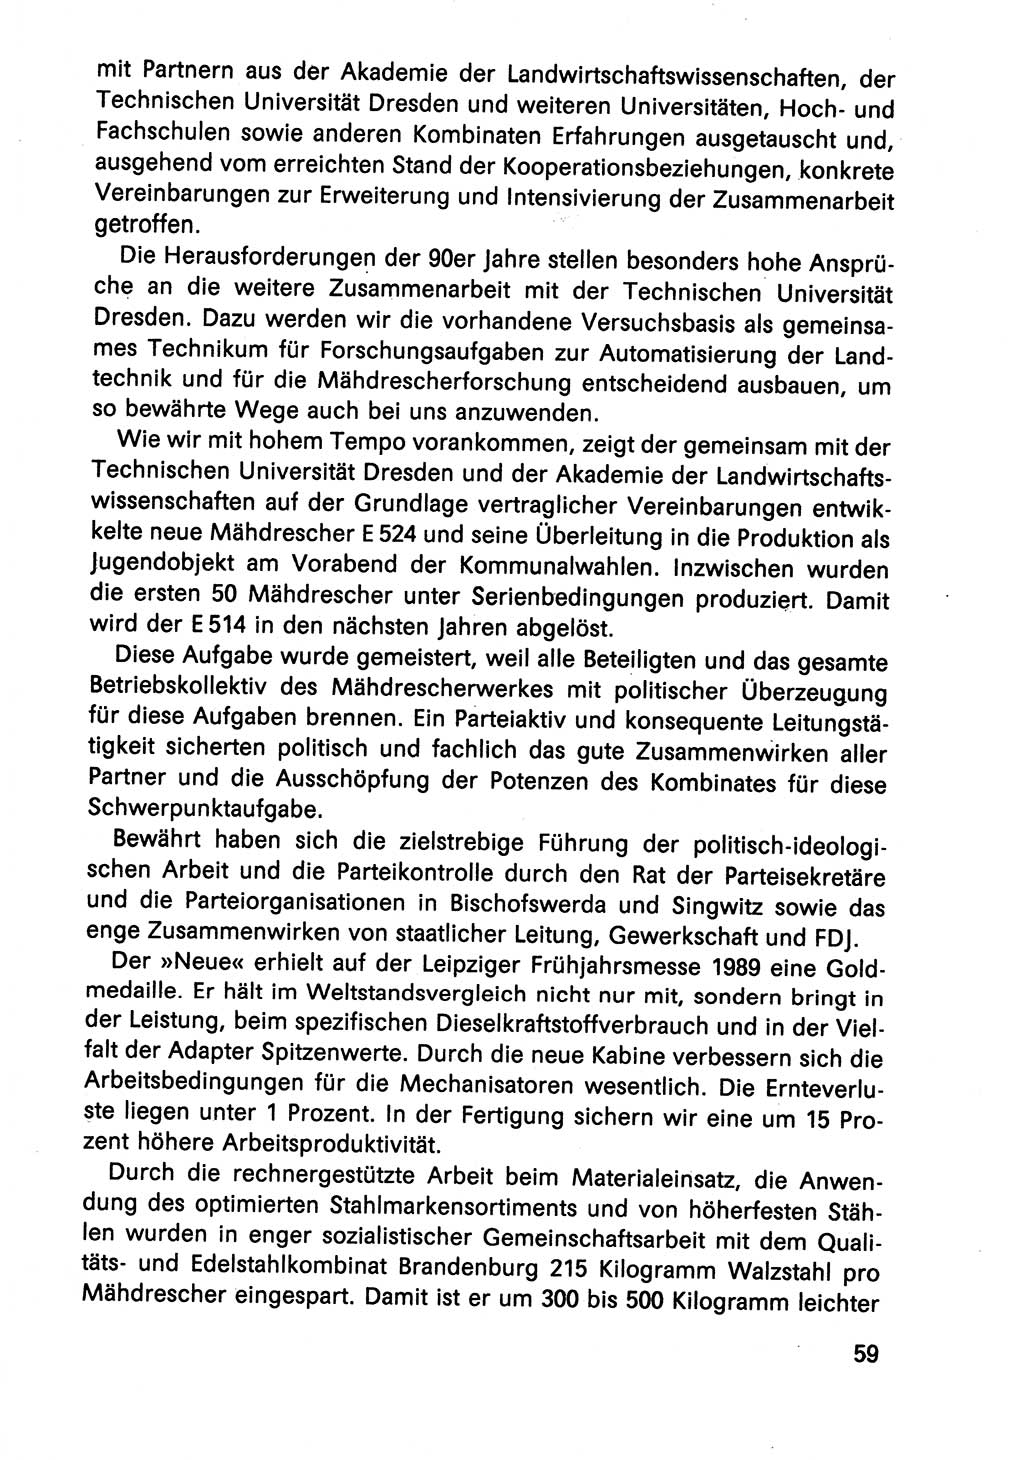 Diskussionsreden, 8. Tagung des ZK (Zentralkomitee) der SED (Sozialistische Einheitspartei Deutschlands) [Deutsche Demokratische Republik (DDR)] 1989, Seite 59 (Disk.-Red. 8. Tg. ZK SED DDR 1989, S. 59)